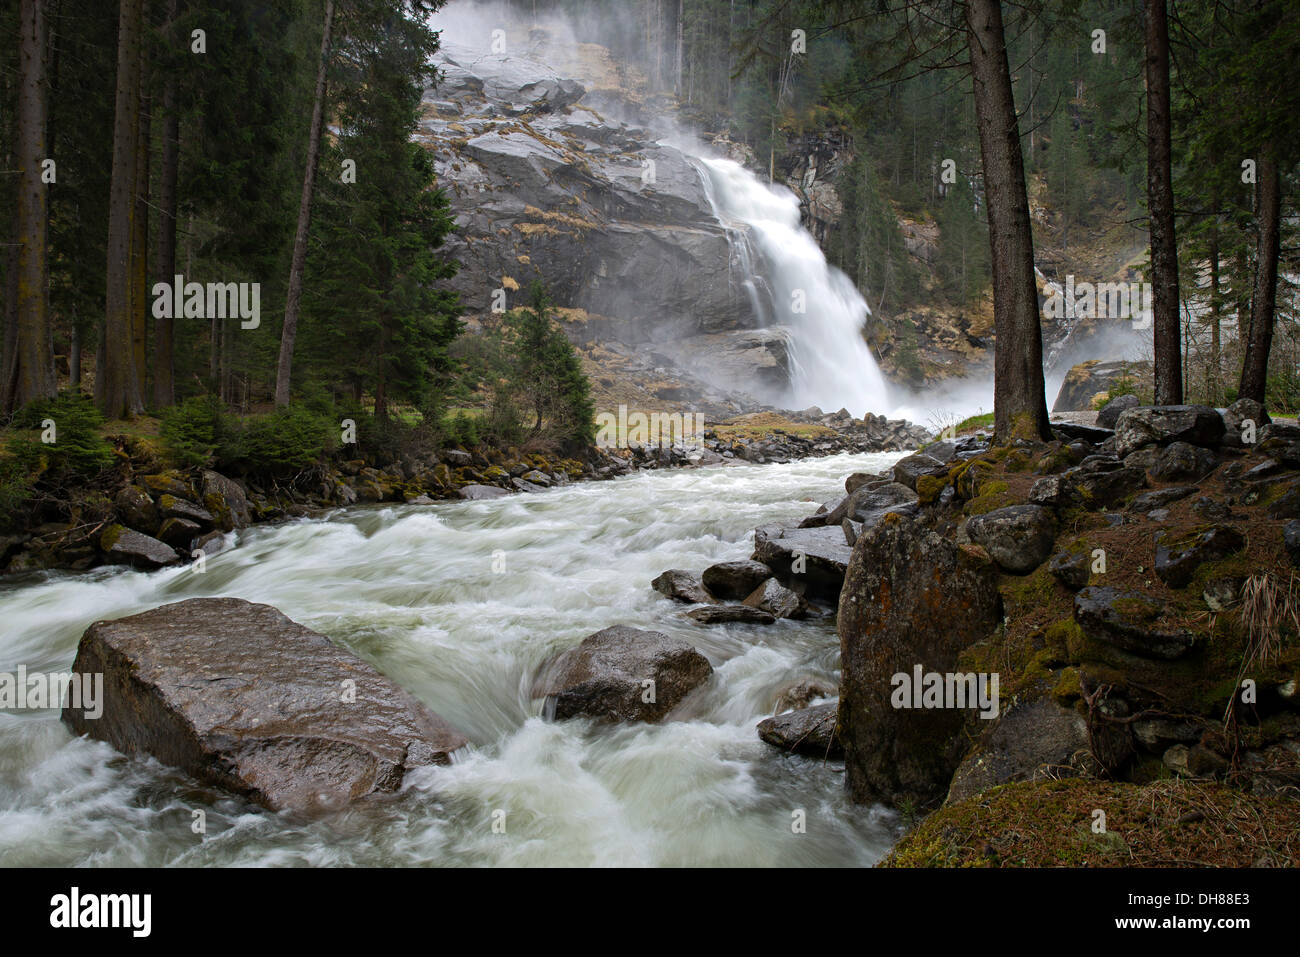 Chutes de Krimml, lower falls, Krimml, Salzbourg, Autriche Banque D'Images